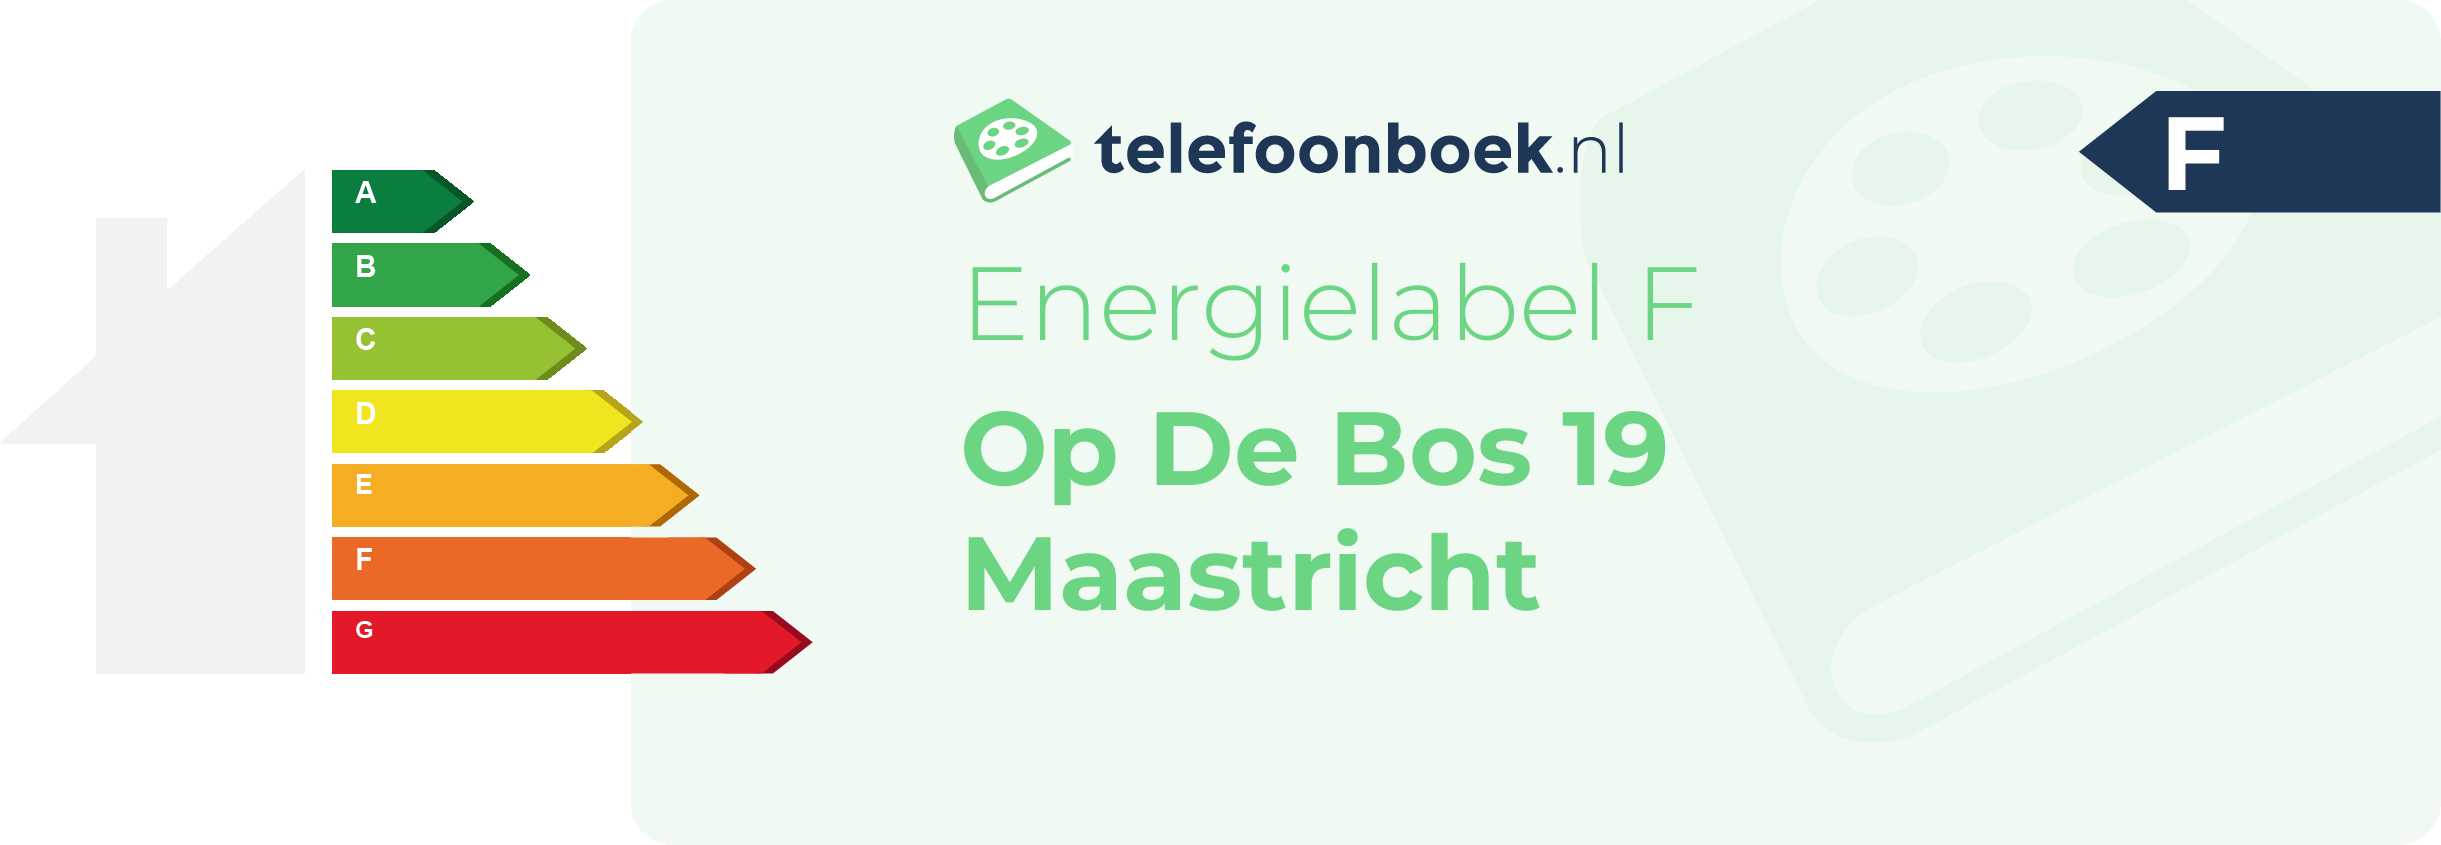 Energielabel Op De Bos 19 Maastricht